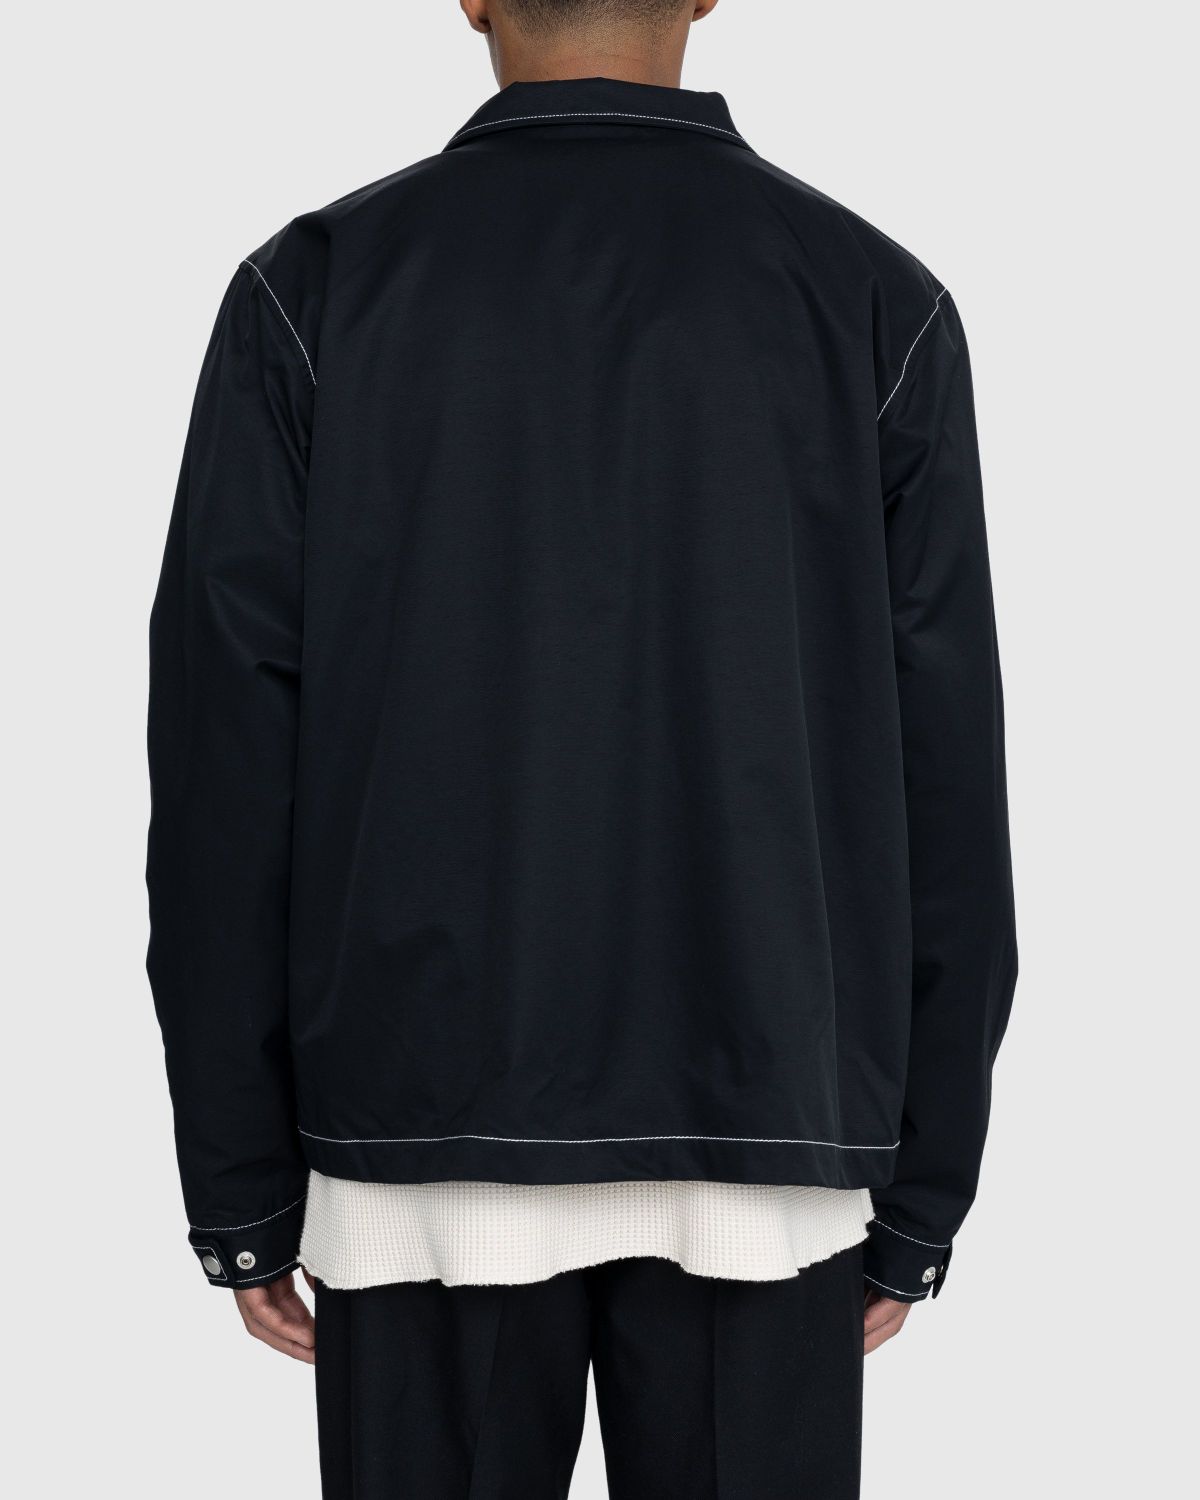 Highsnobiety – Brushed Nylon Jacket Black - Outerwear - Black - Image 4